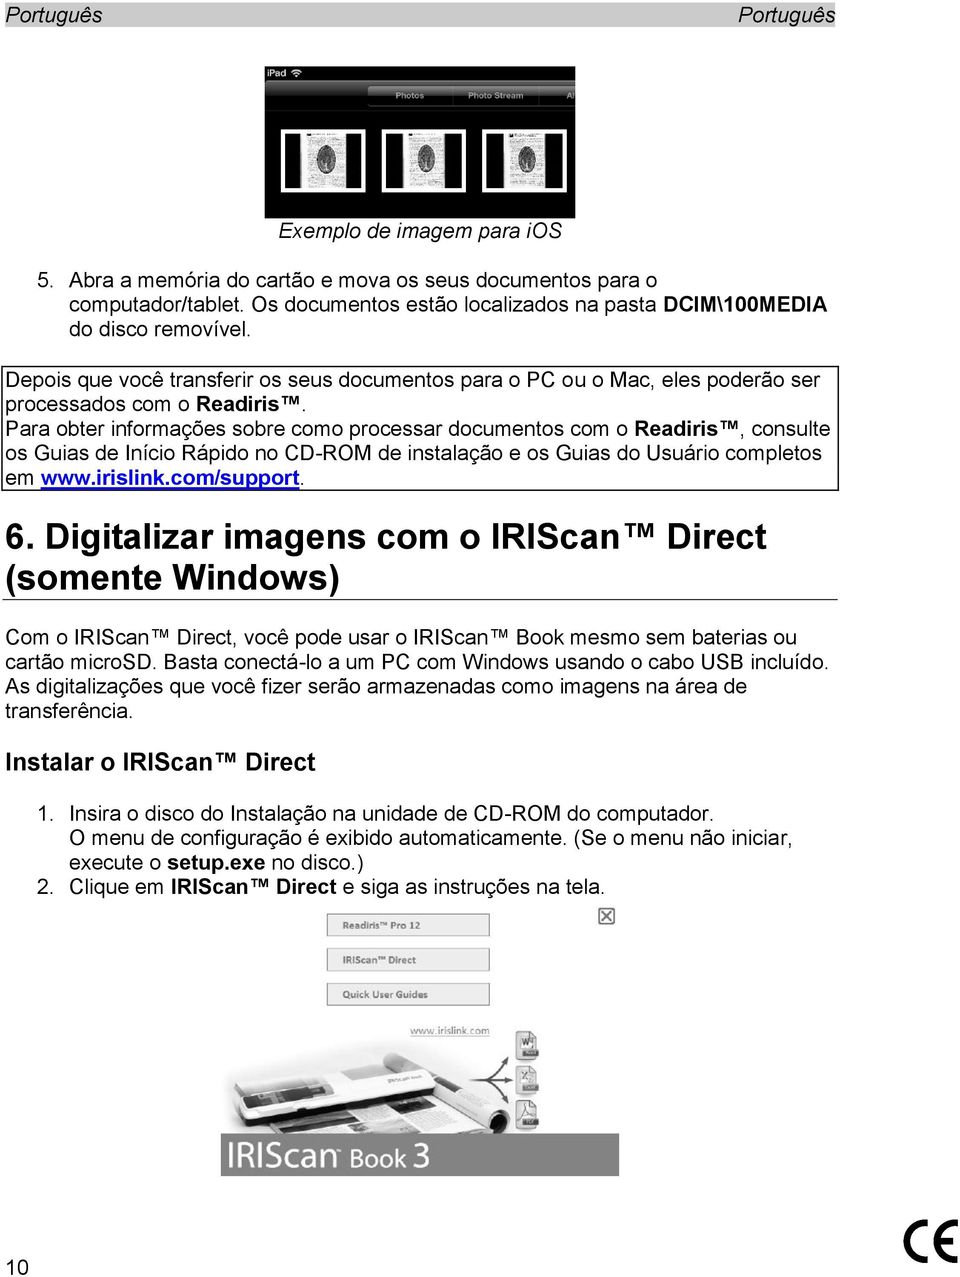 Para obter informações sobre como processar documentos com o Readiris, consulte os Guias de Início Rápido no CD-ROM de instalação e os Guias do Usuário completos em www.irislink.com/support. 6.